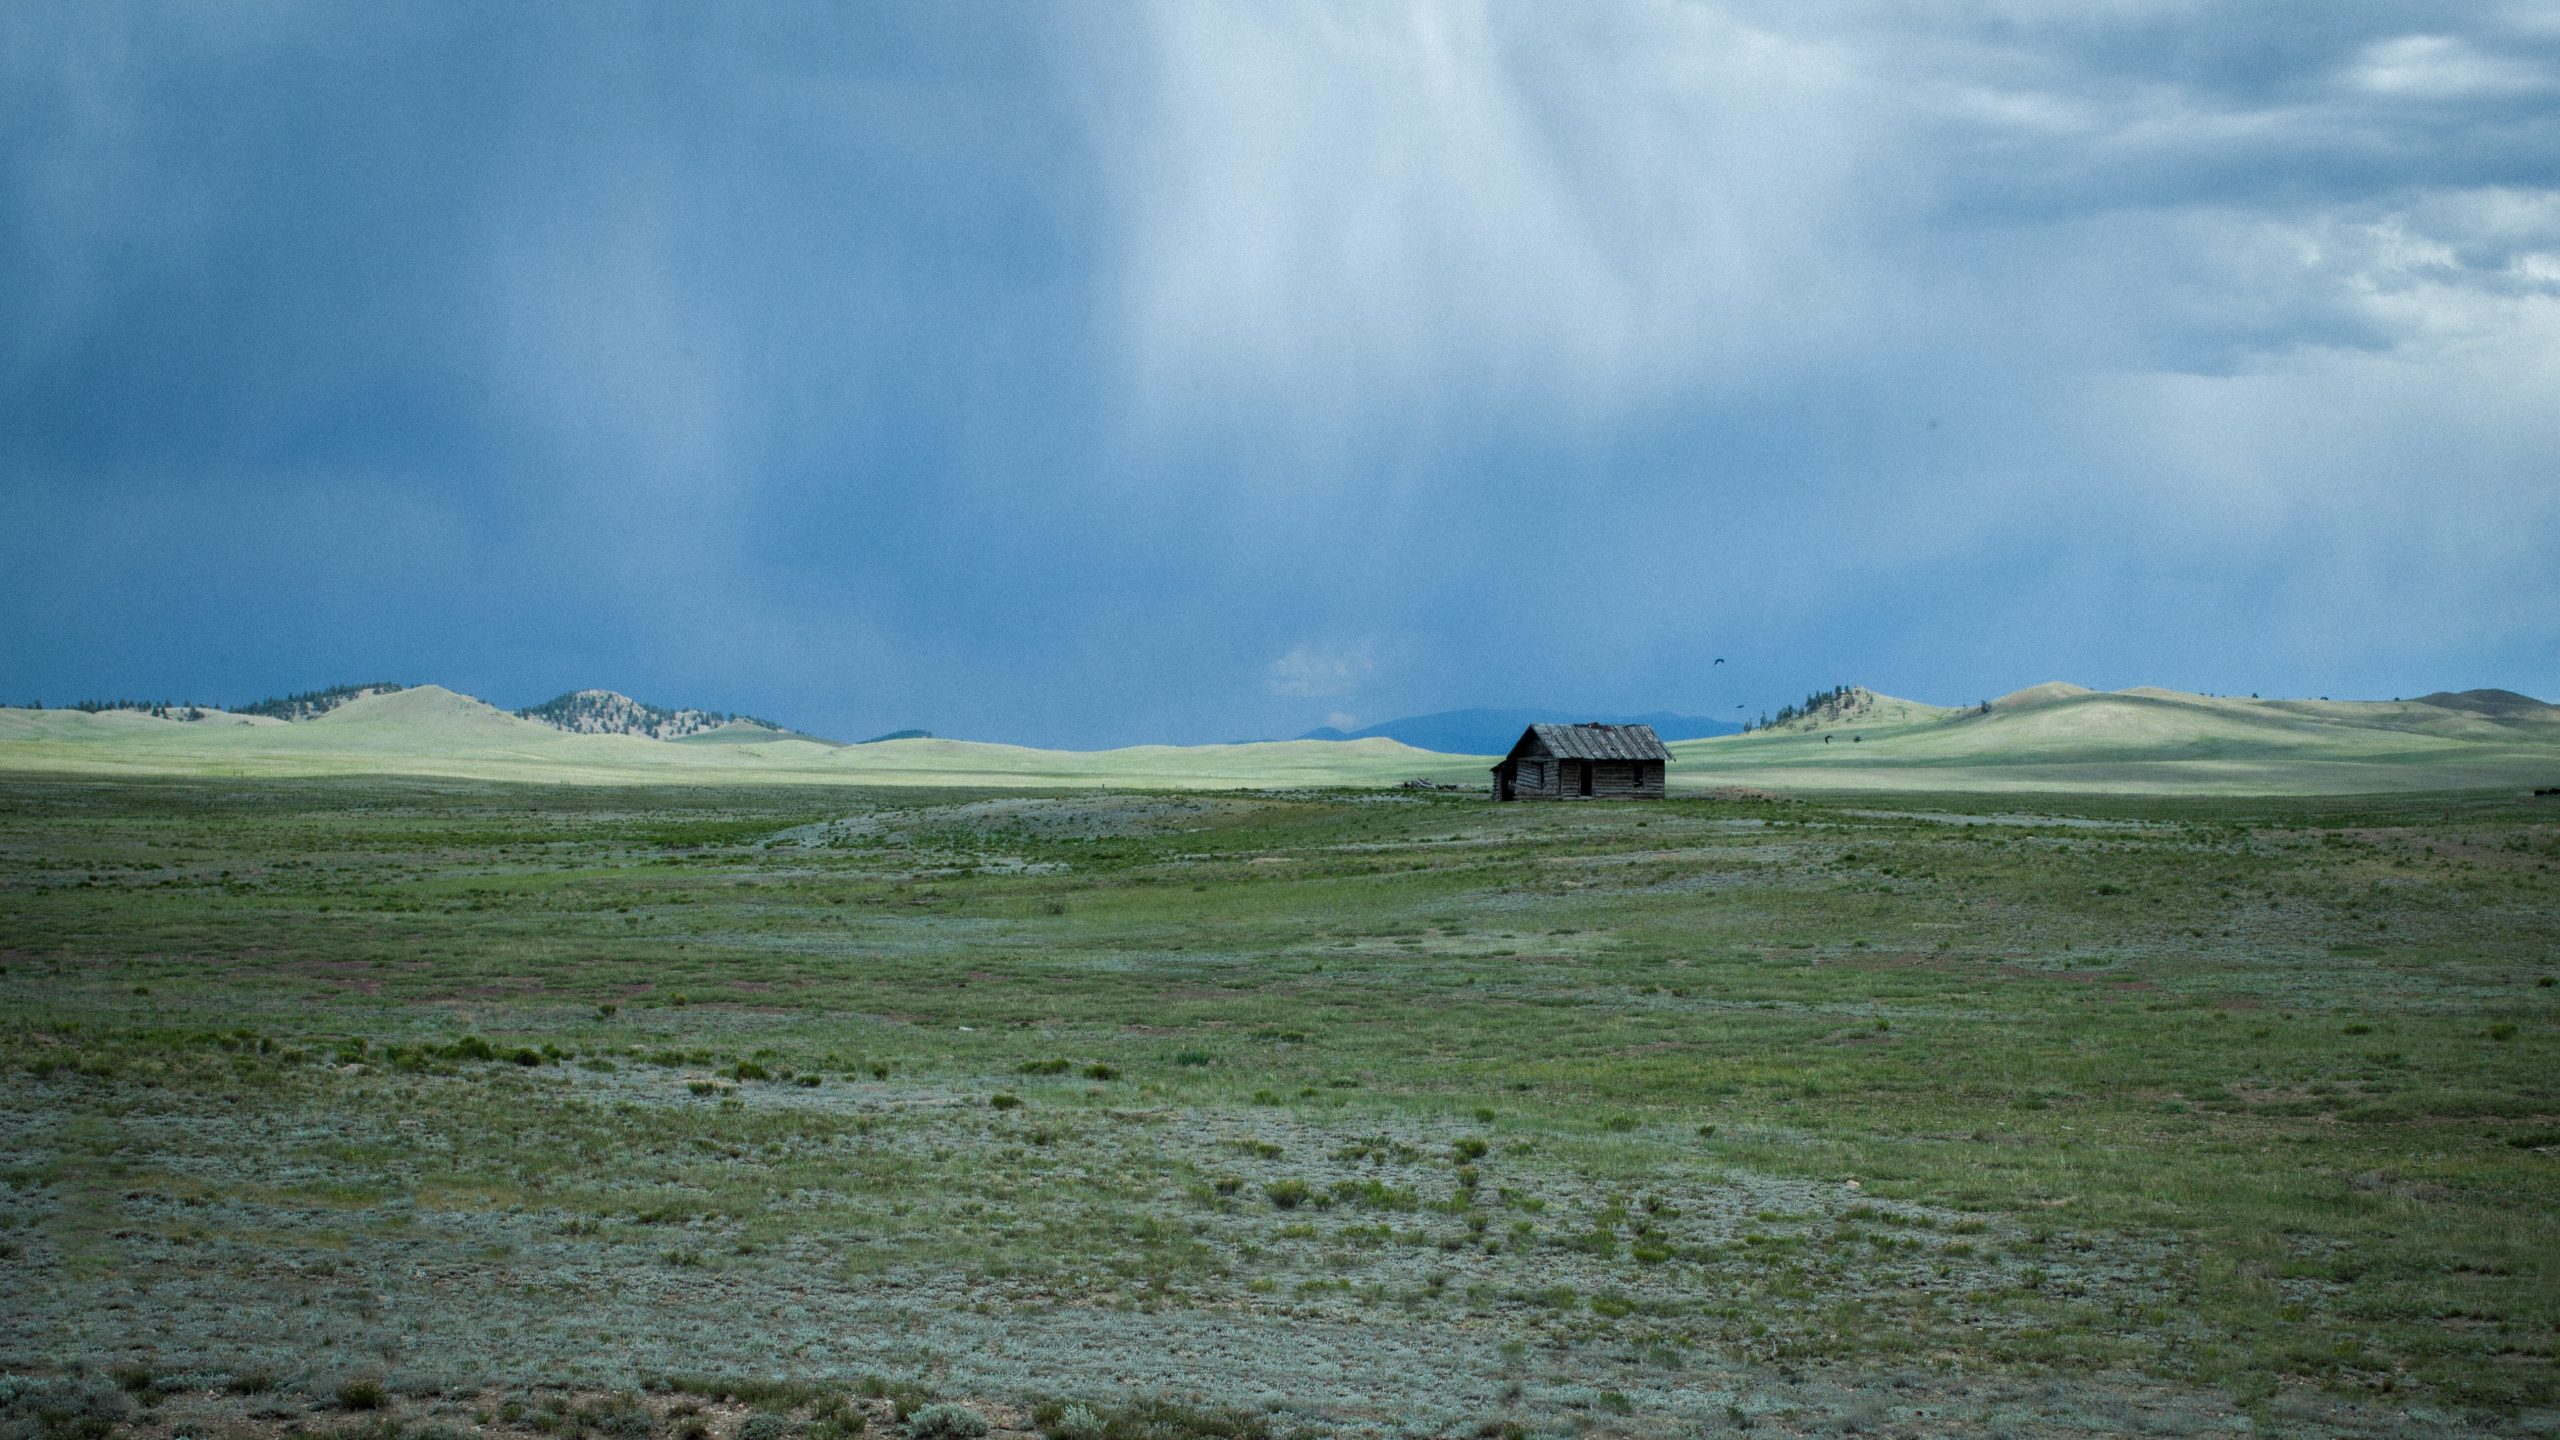 Photographie d'un grand champ vert entouré de collines en pente. Au centre du champ se trouve une petite cabane marron. Au-dessus, le ciel est d'un bleu froid et sombre.